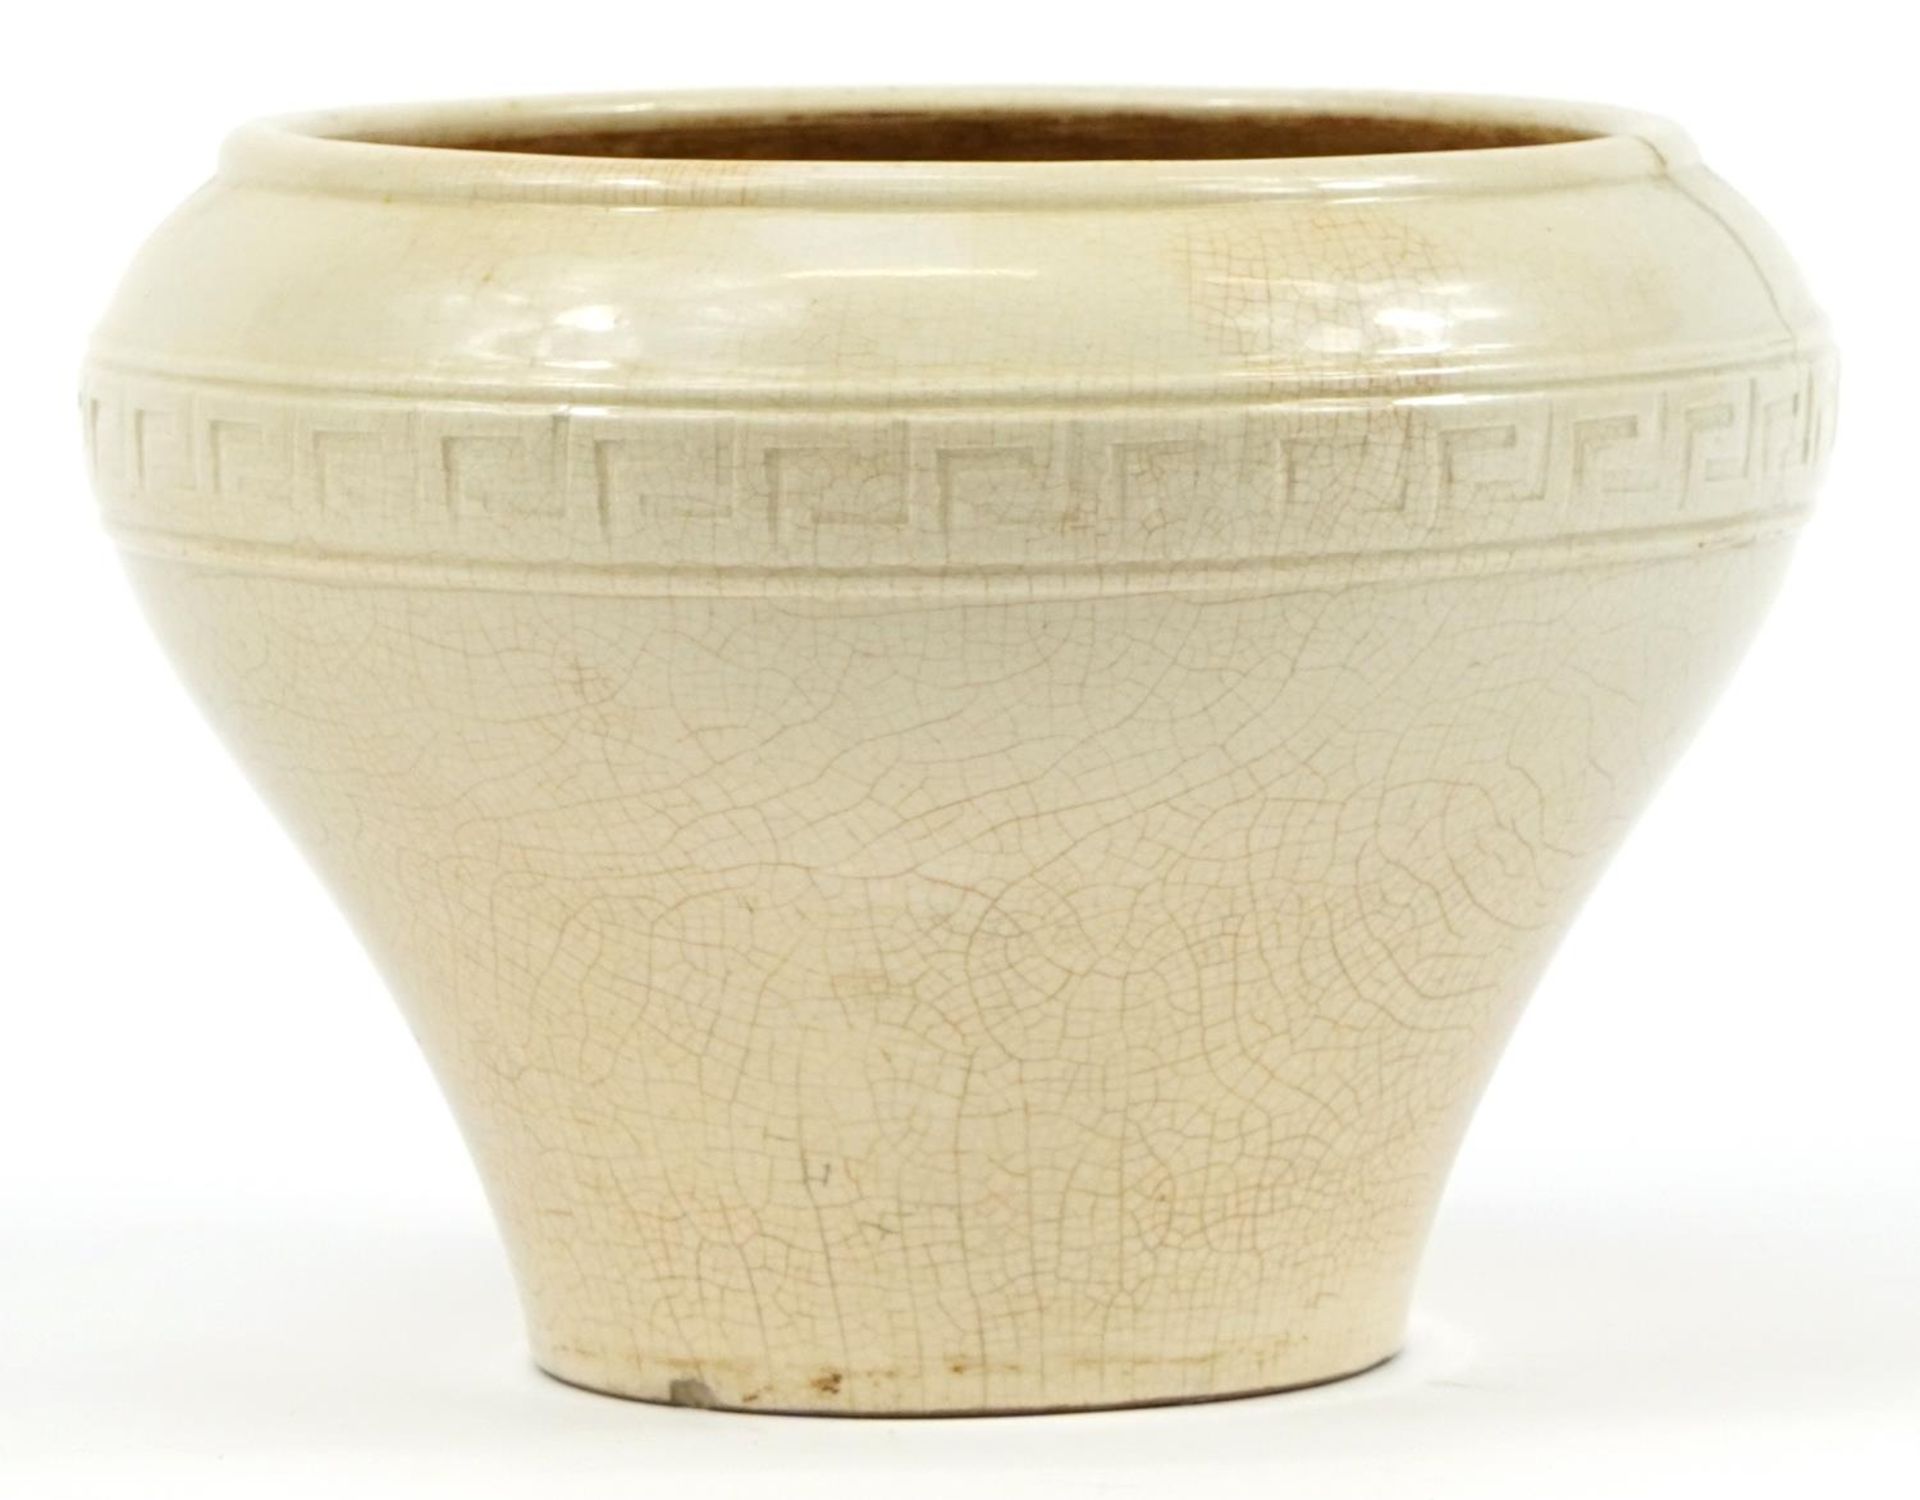 Korean porcelain baluster vase having a white glaze, 20cm high - Image 2 of 3